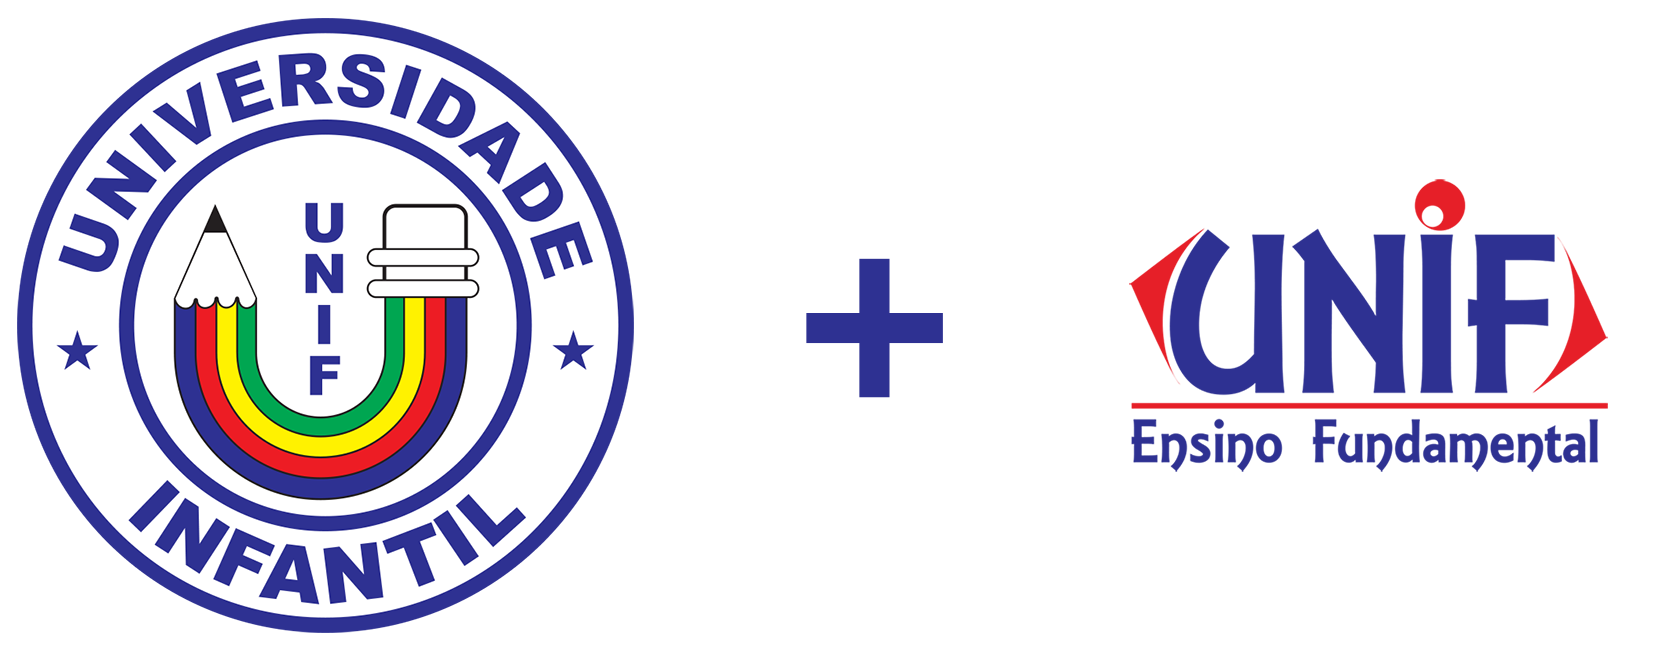 União dos dois logotipos antigos